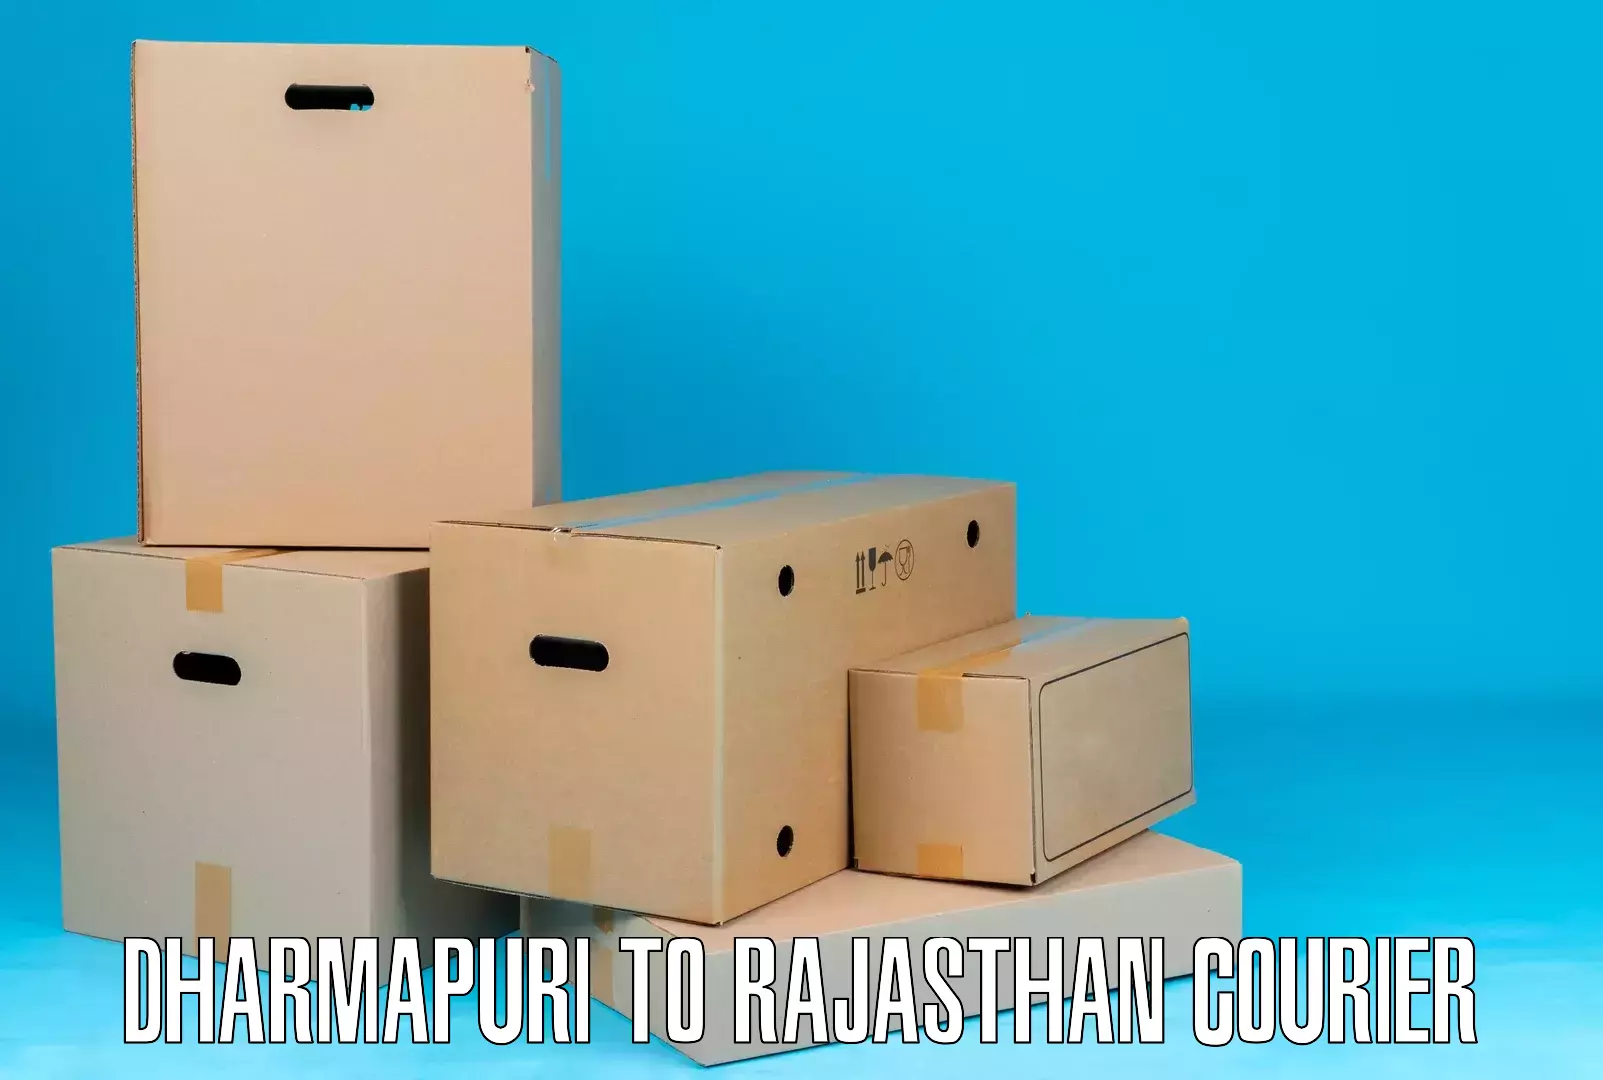 Business shipping needs Dharmapuri to Khairthal